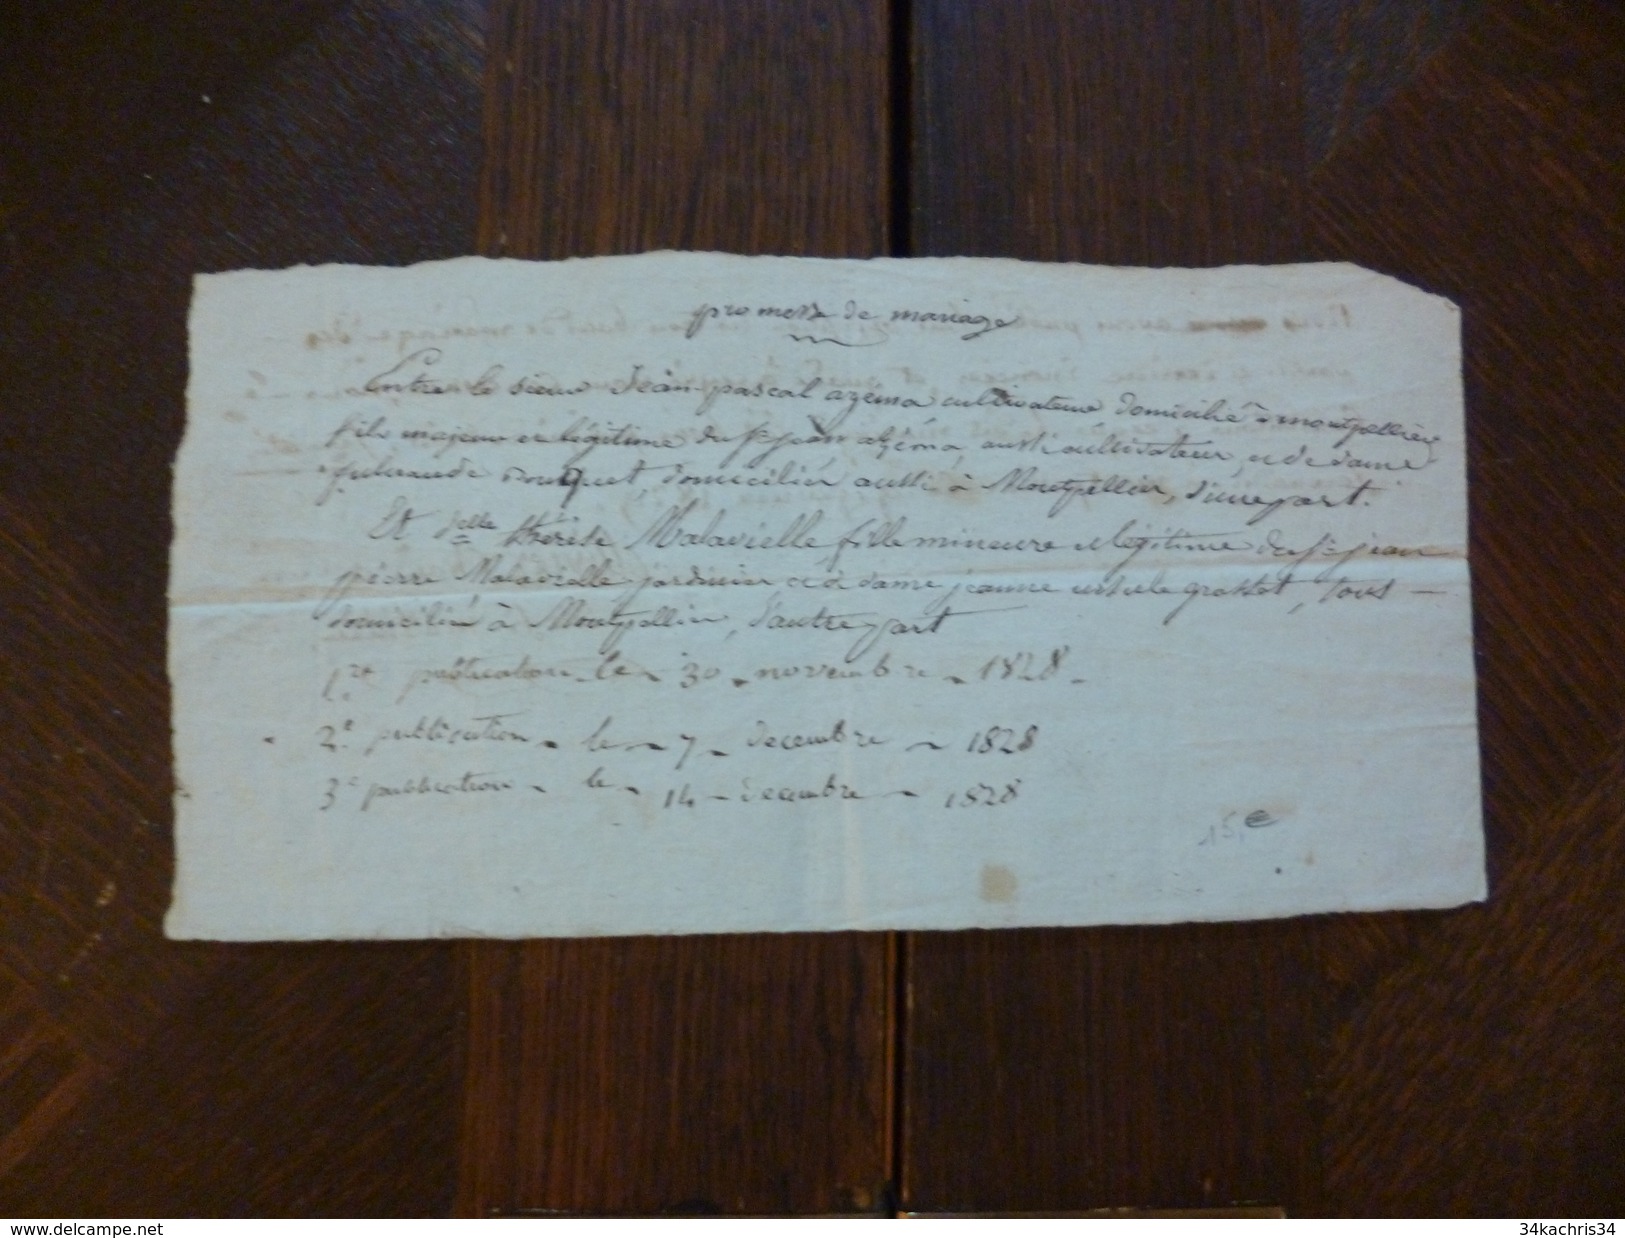 Promesse De Mariage  Montpellier Azema Cultivateur Et Malavielle  1828 - Manuscripts